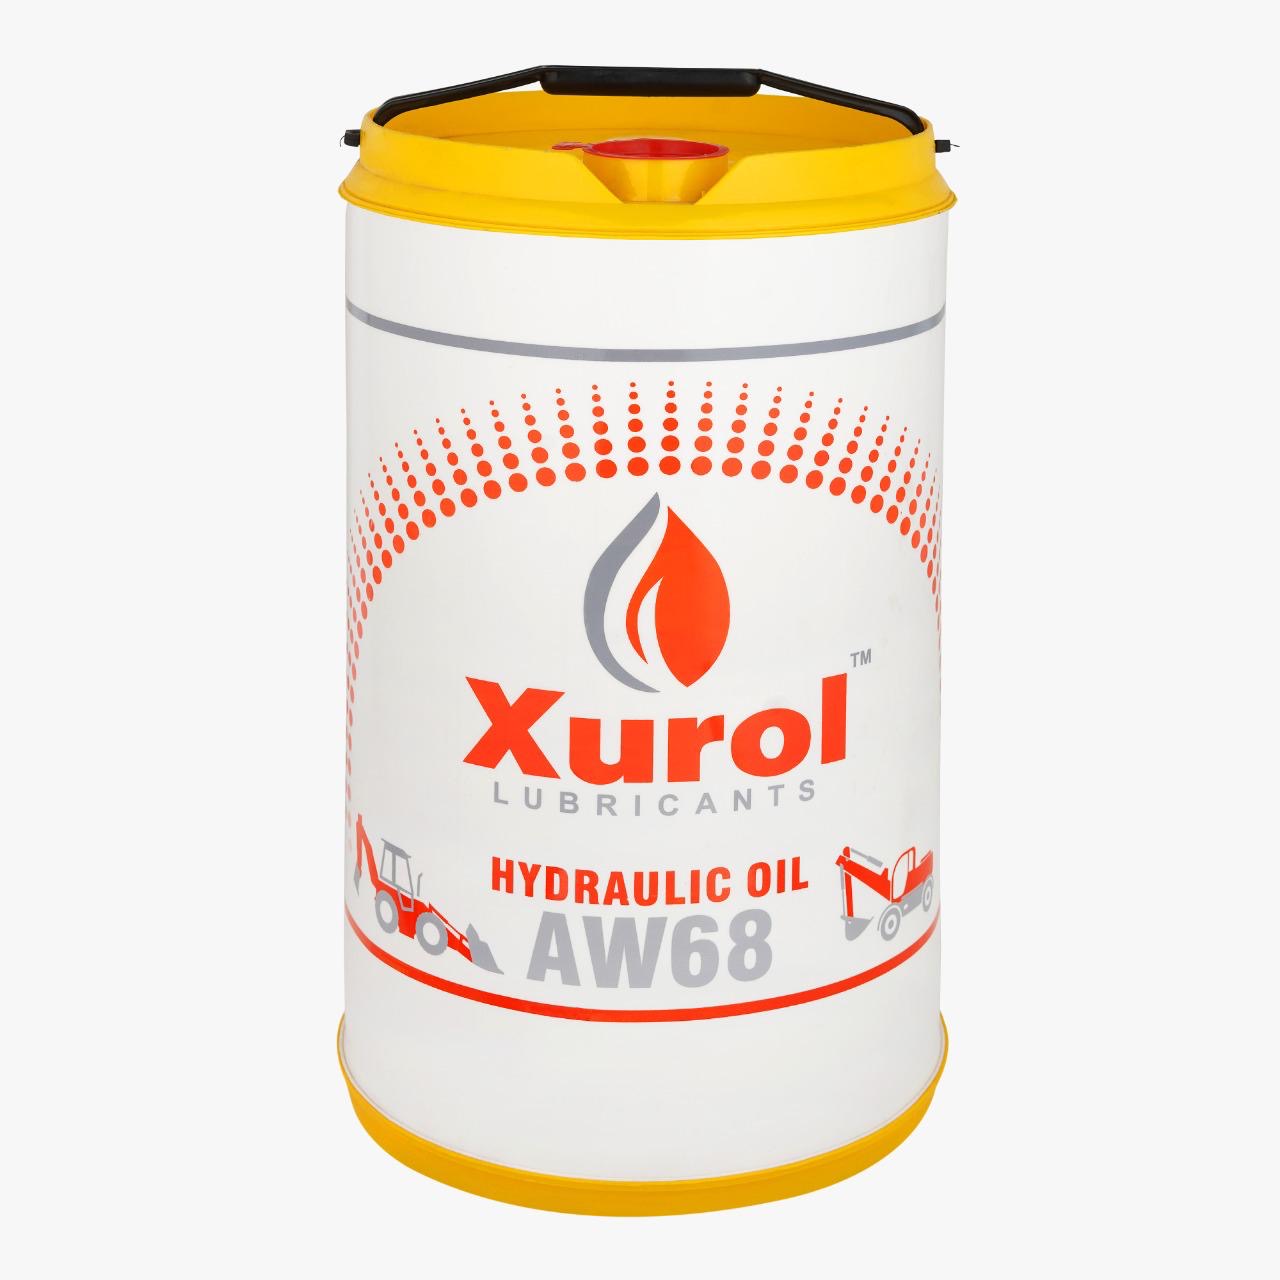 Xurol Hydraulic Oil 46/68